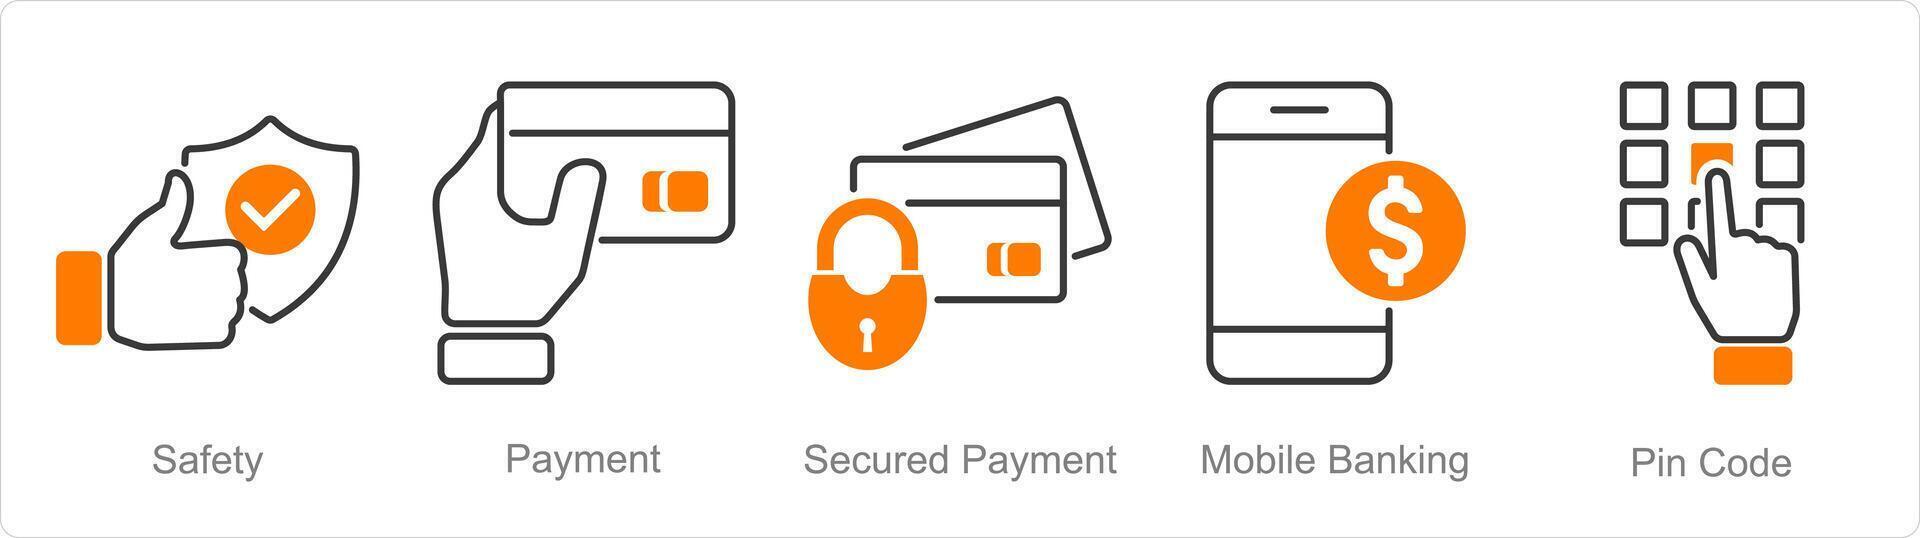 en uppsättning av 5 säkerhet ikoner som säkerhet, betalning, säkrad betalning, mobil bank vektor